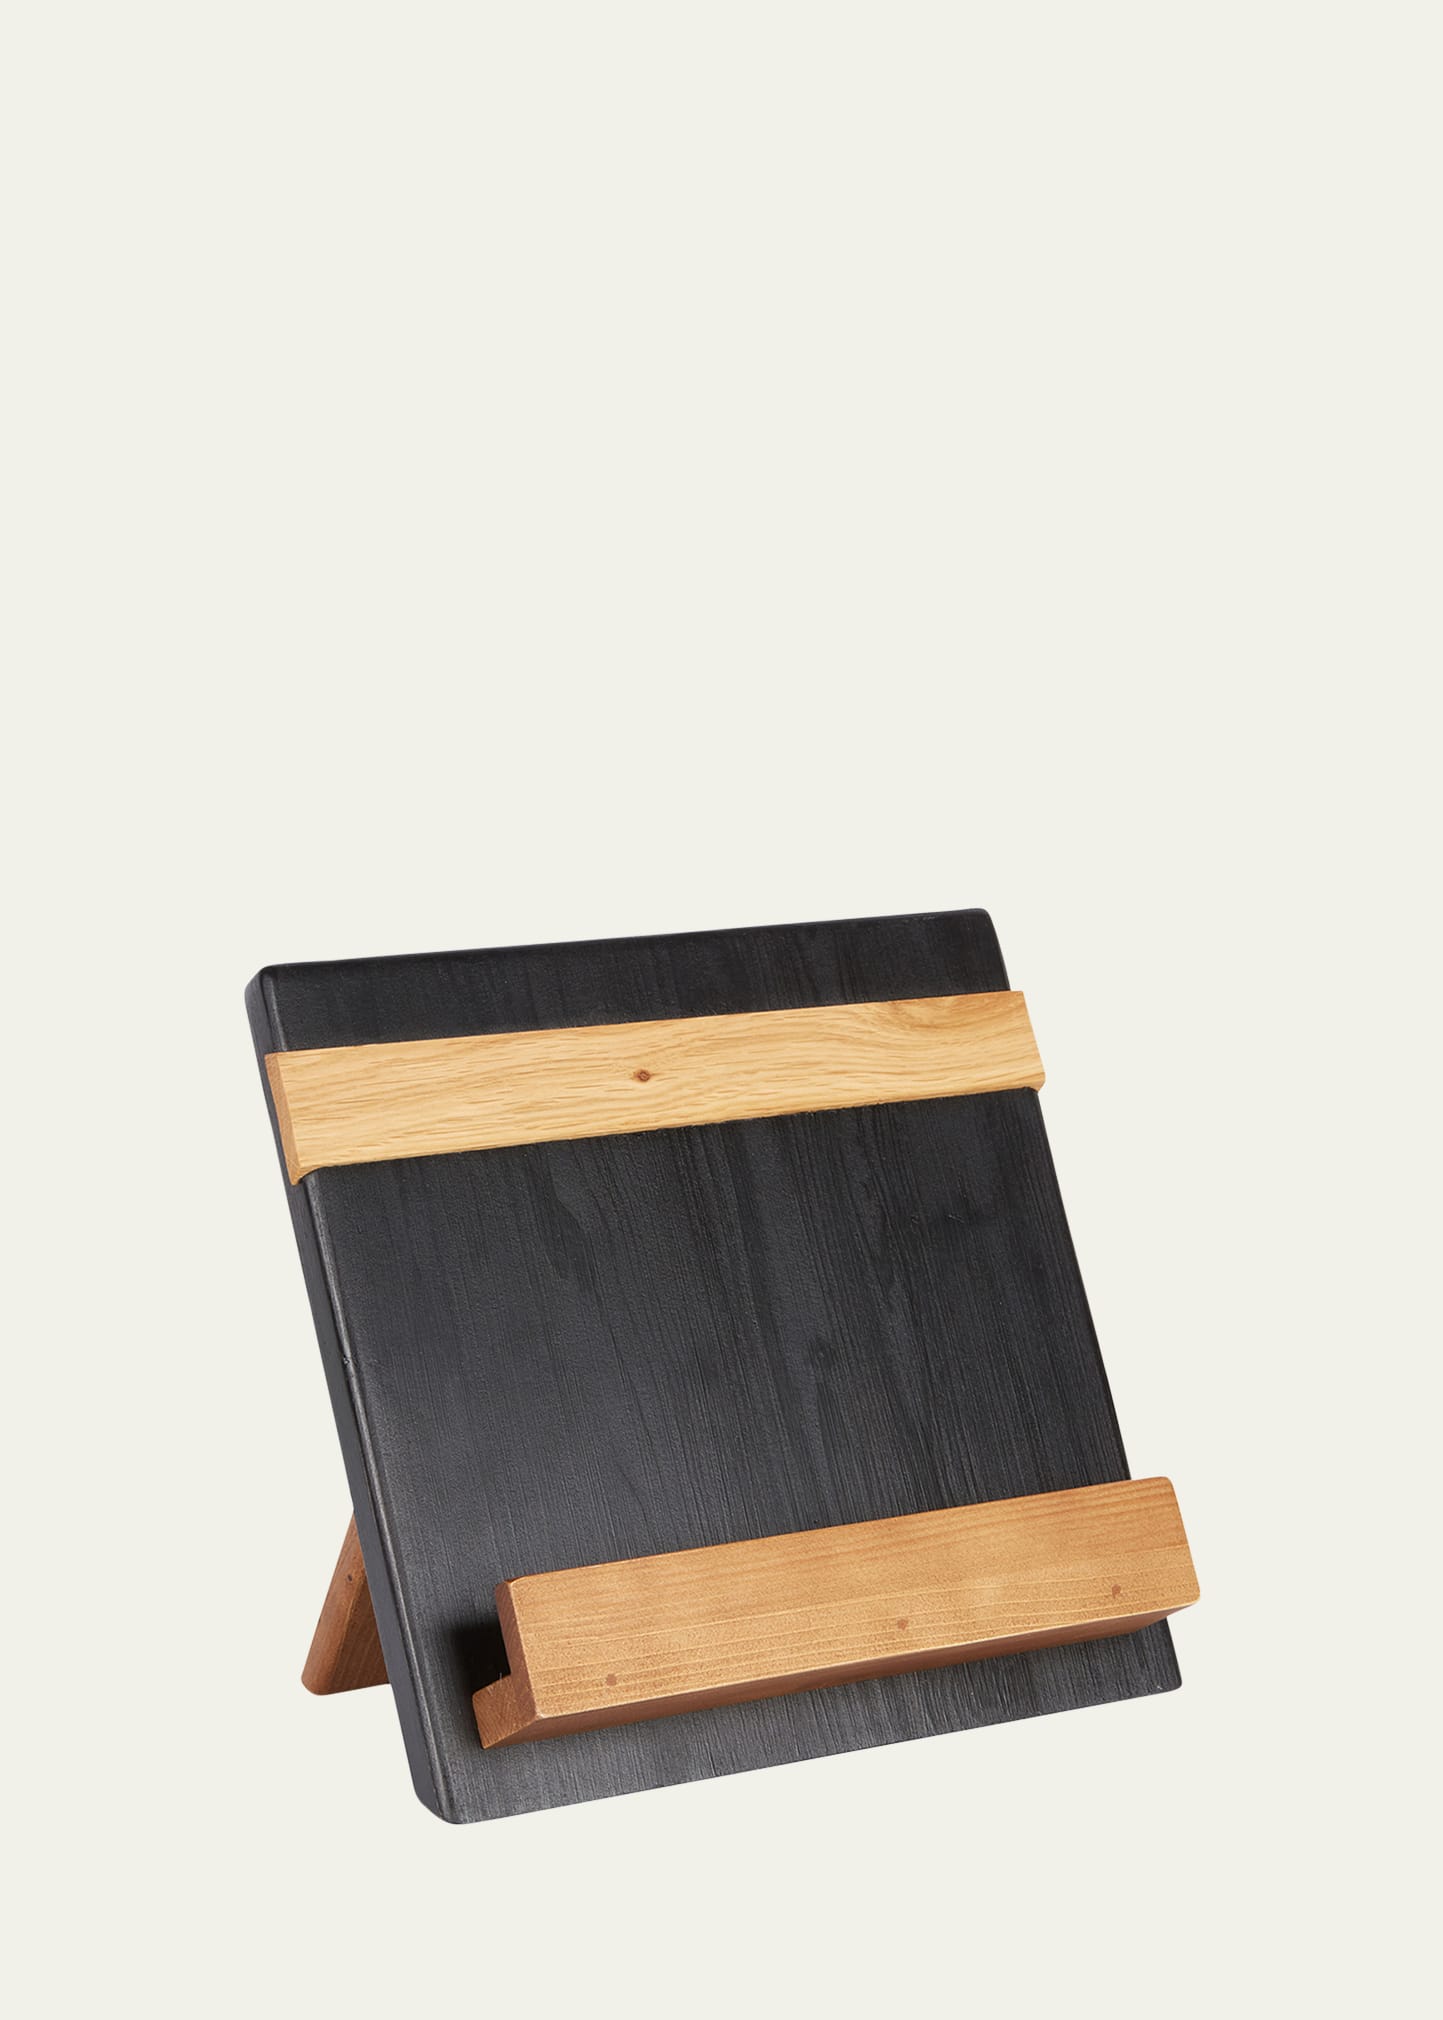 Black Mod iPad and Cookbook Holder